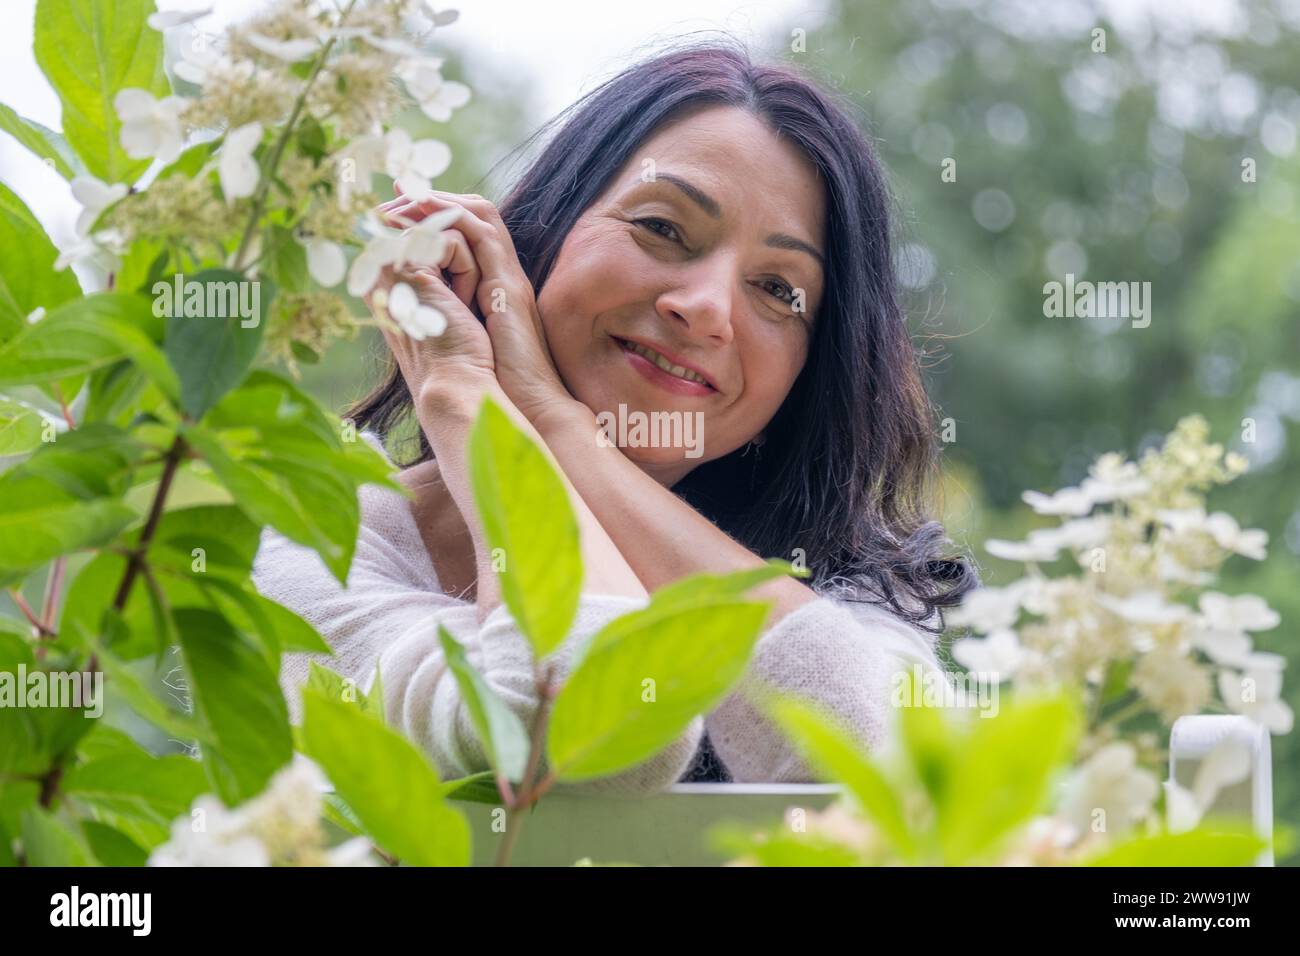 Una donna di mezza età sorridente in un giardino di fiori verde esprime felicità e gioia dei cambiamenti ormonali e delle lotte di mezza età. Foto di alta qualità Foto Stock